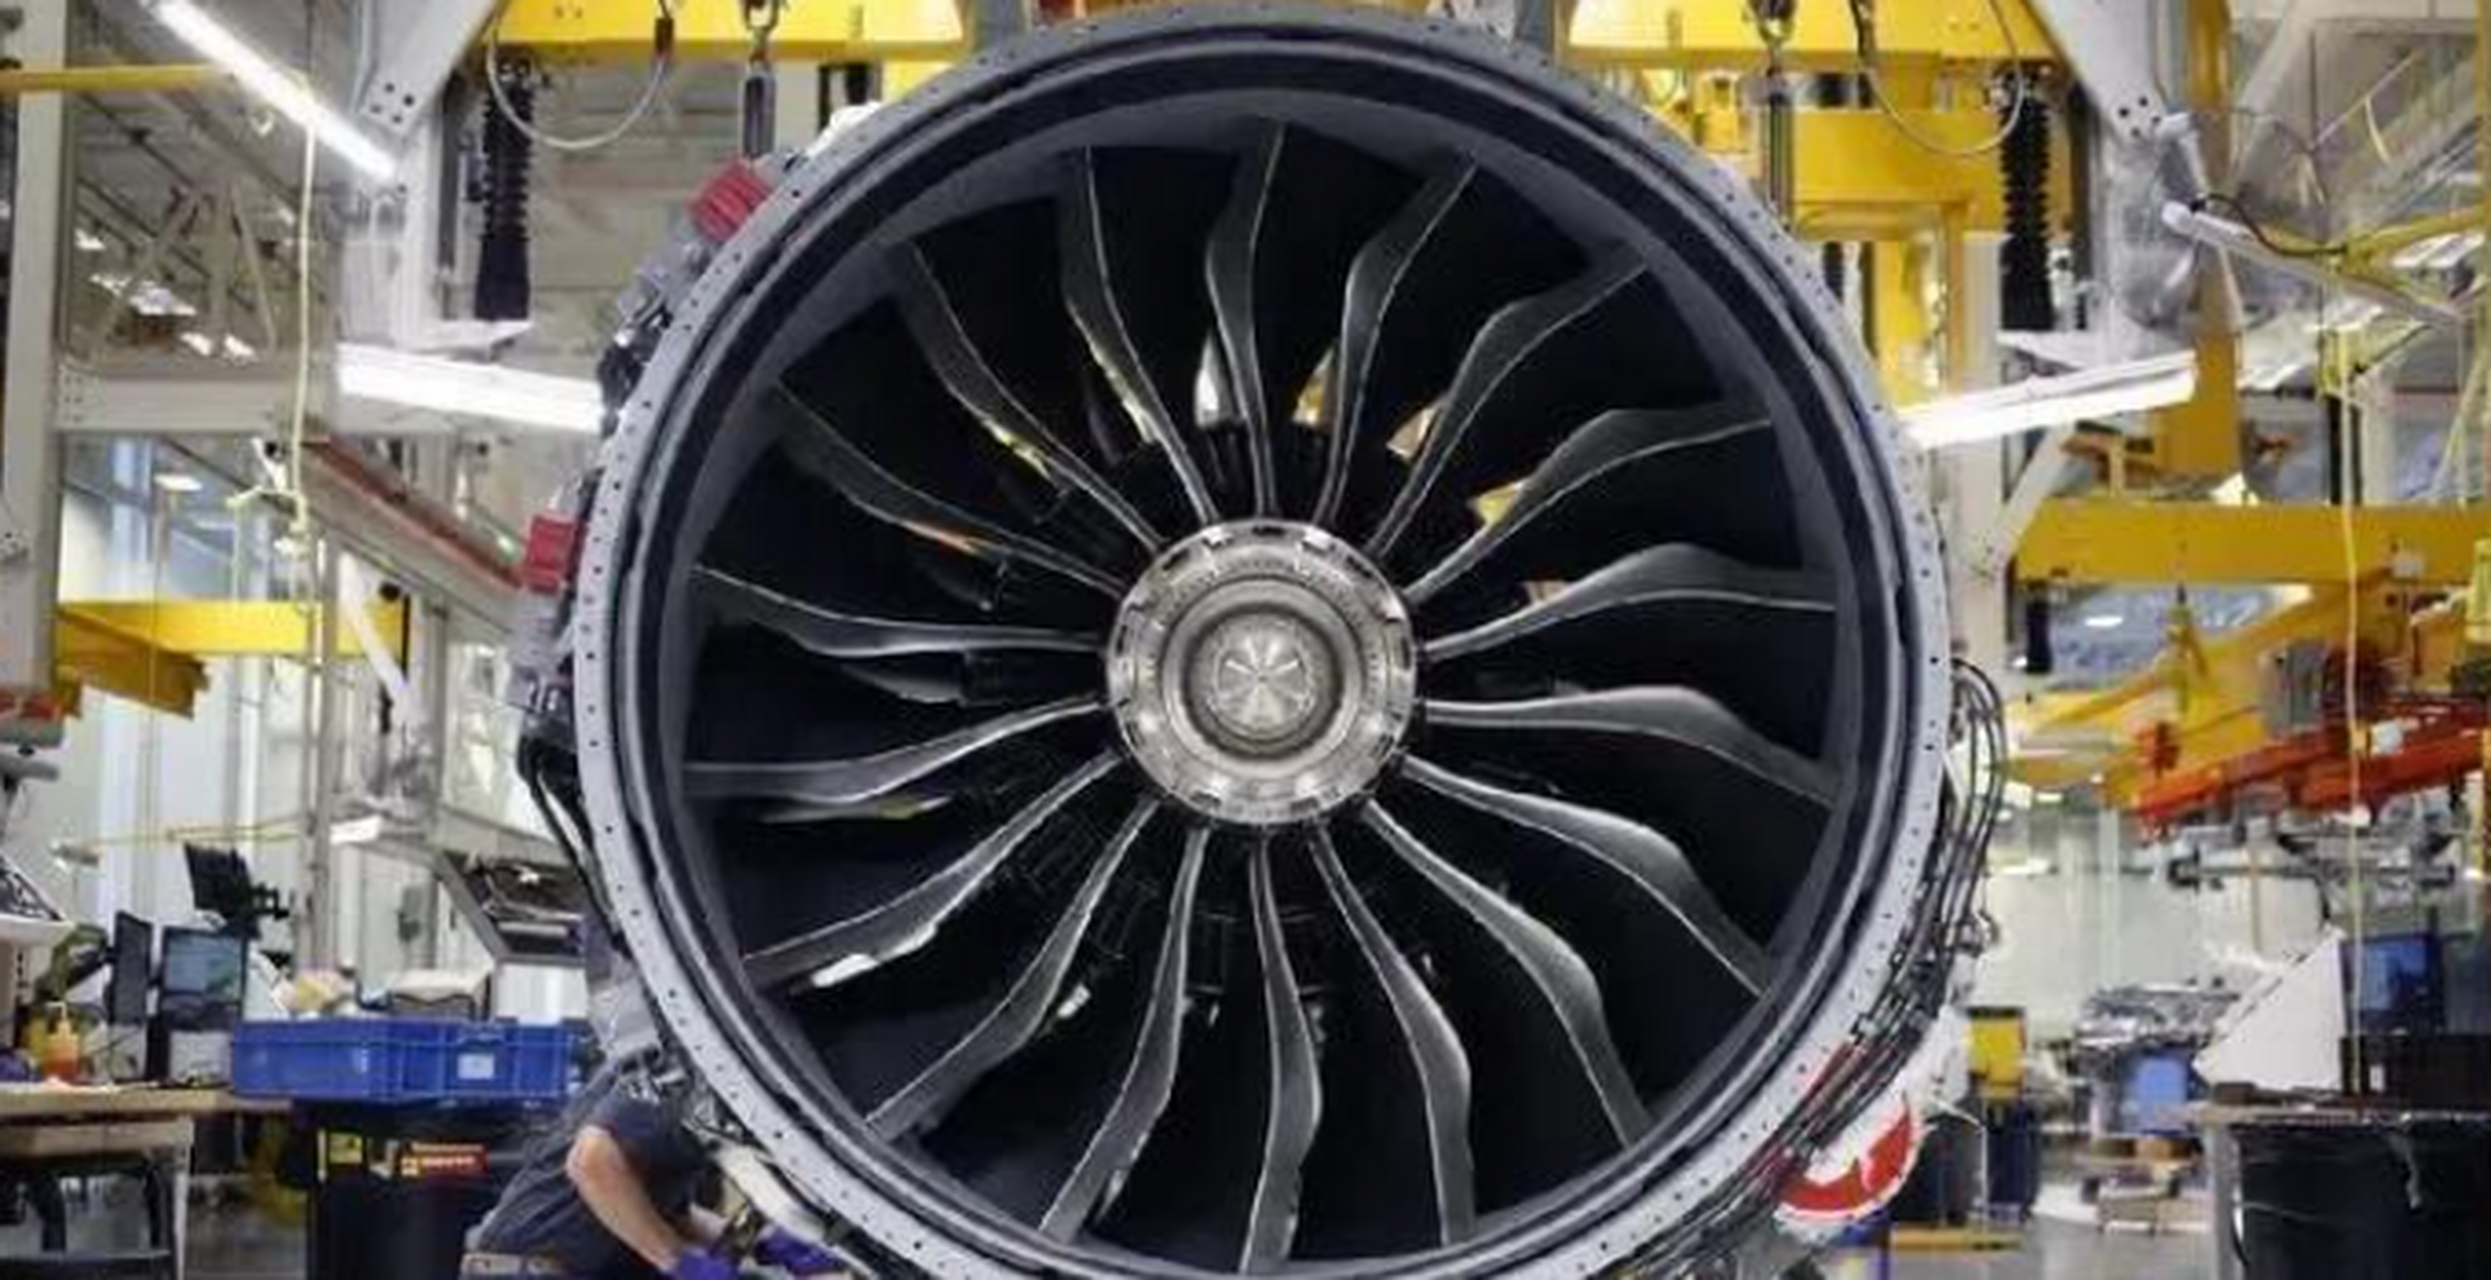 近期,全球最先进的航空发动机终于诞生,其独立推力高达61吨,超越了